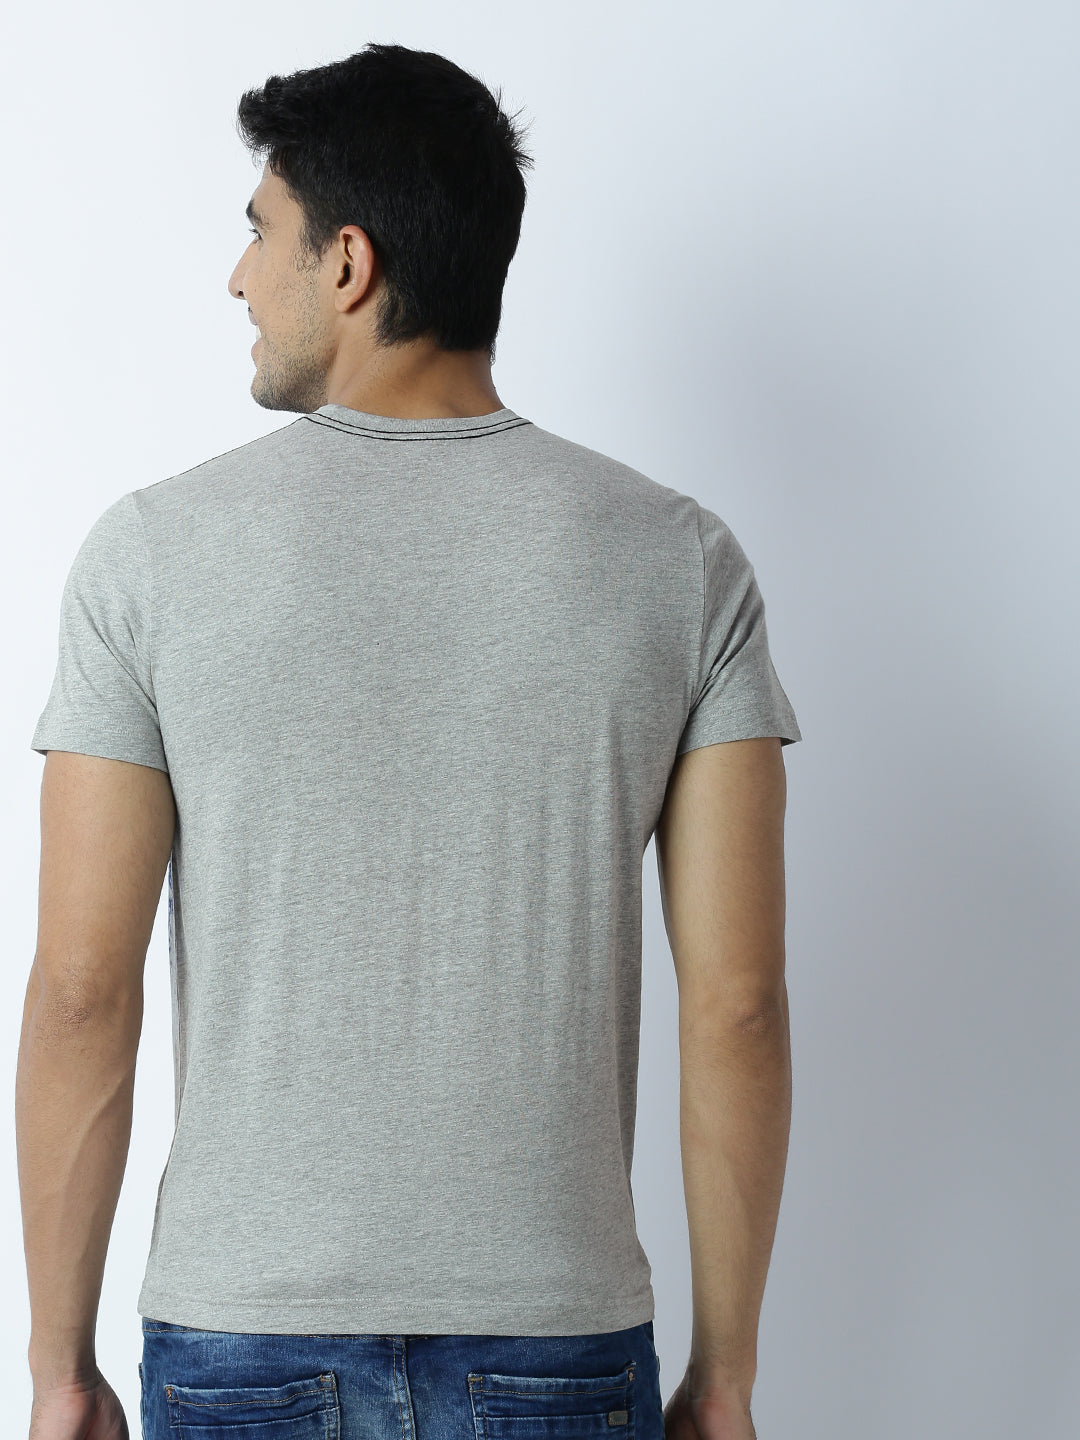 Buy Solids: Denim Blue (Pocket) Men Relaxed Fit T-shirt Online